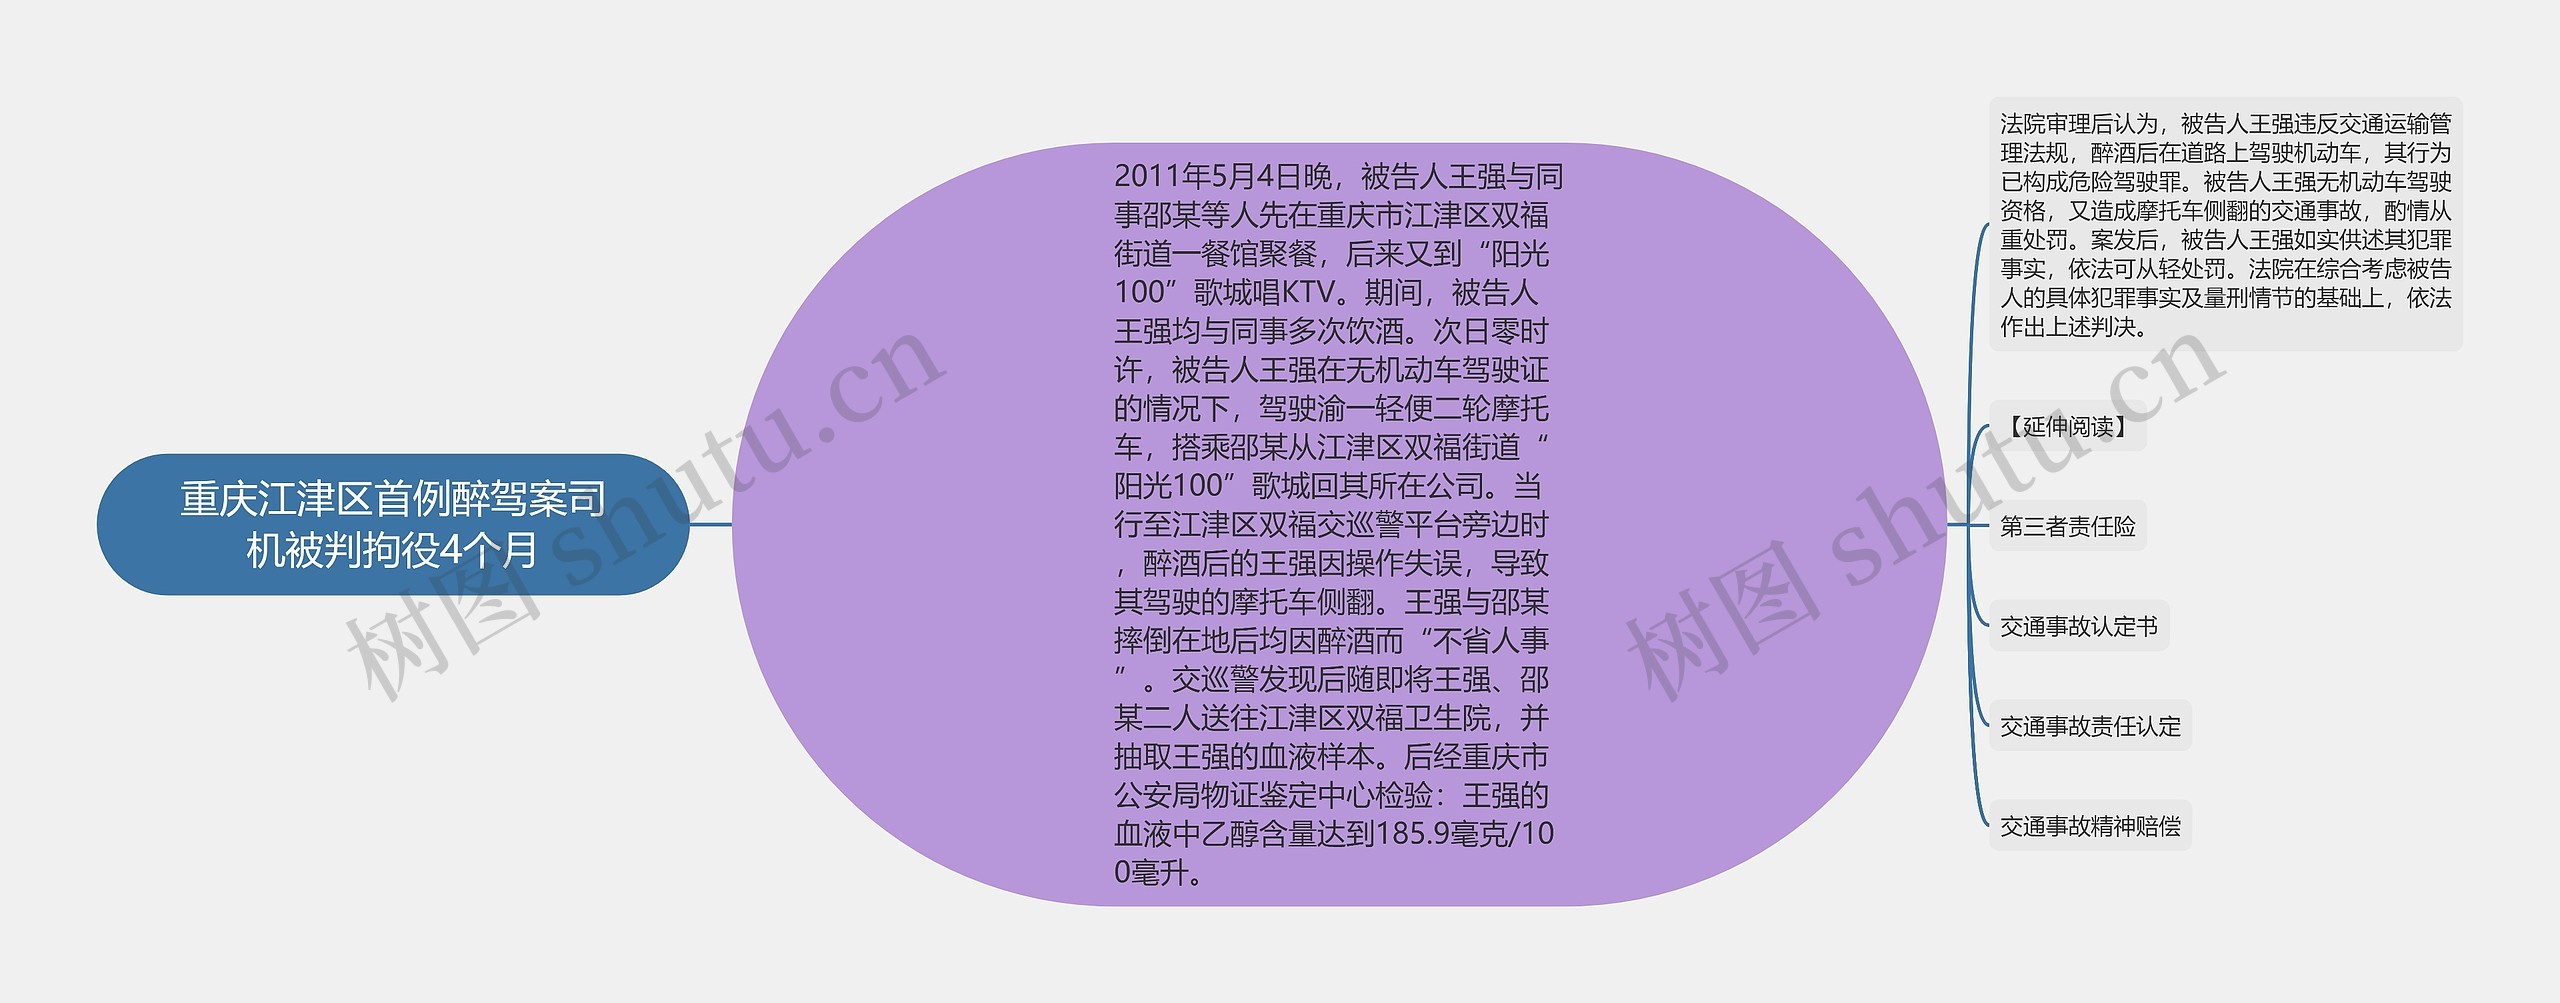 重庆江津区首例醉驾案司机被判拘役4个月思维导图